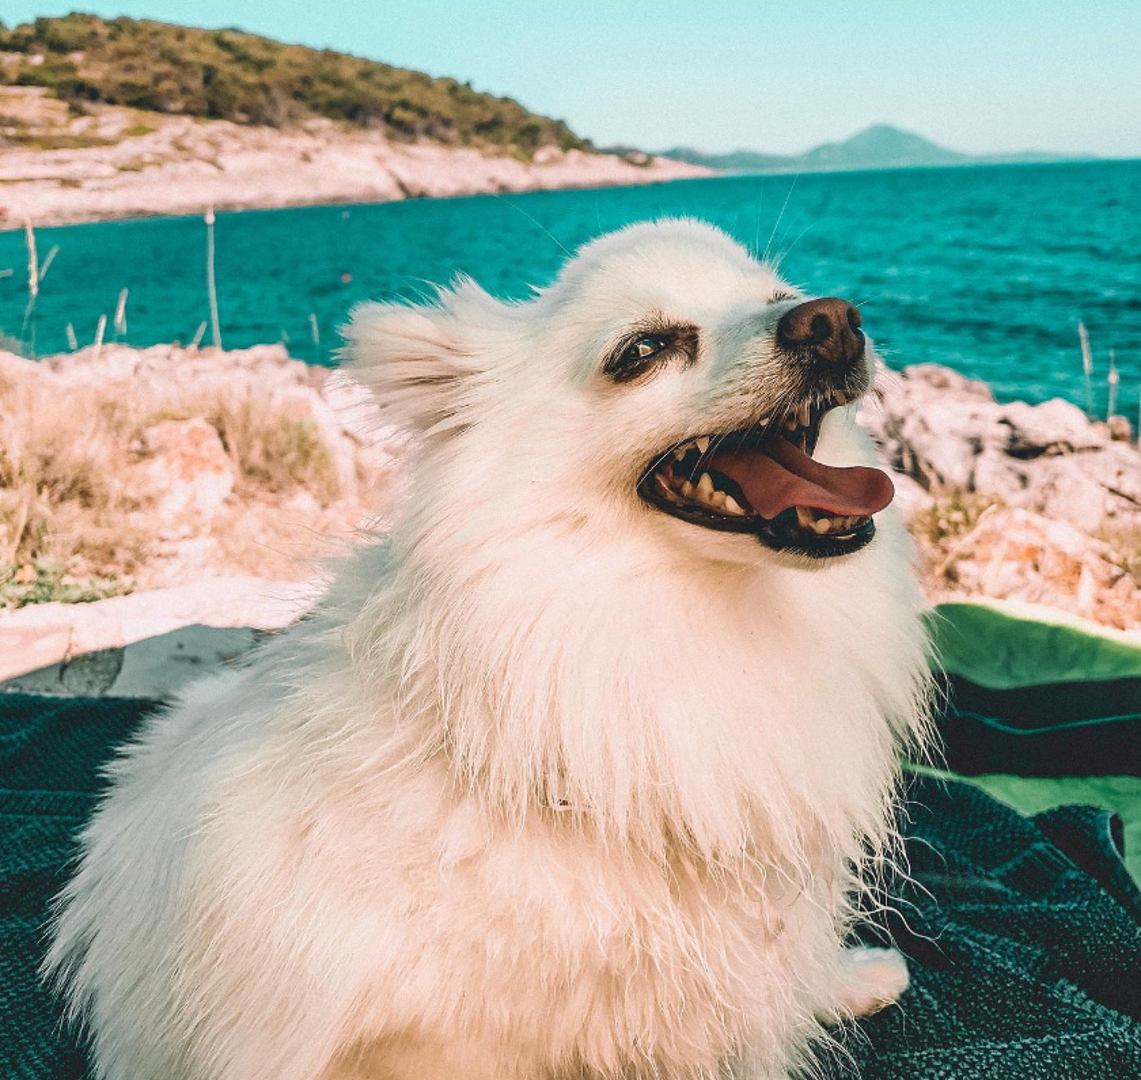 Lošinj je vjerojatno najgostoljubiviji otok na Jadranu prema četveronožnim ljubimcima, sudeći po broju plaža namijenjenih psima. Plaže na kojima su psi dobrodošli prepoznat ćete po oznakama s crtežom psa ili zastavici s logom pseće kosti na plavo-zeleno-žutoj pozadini.